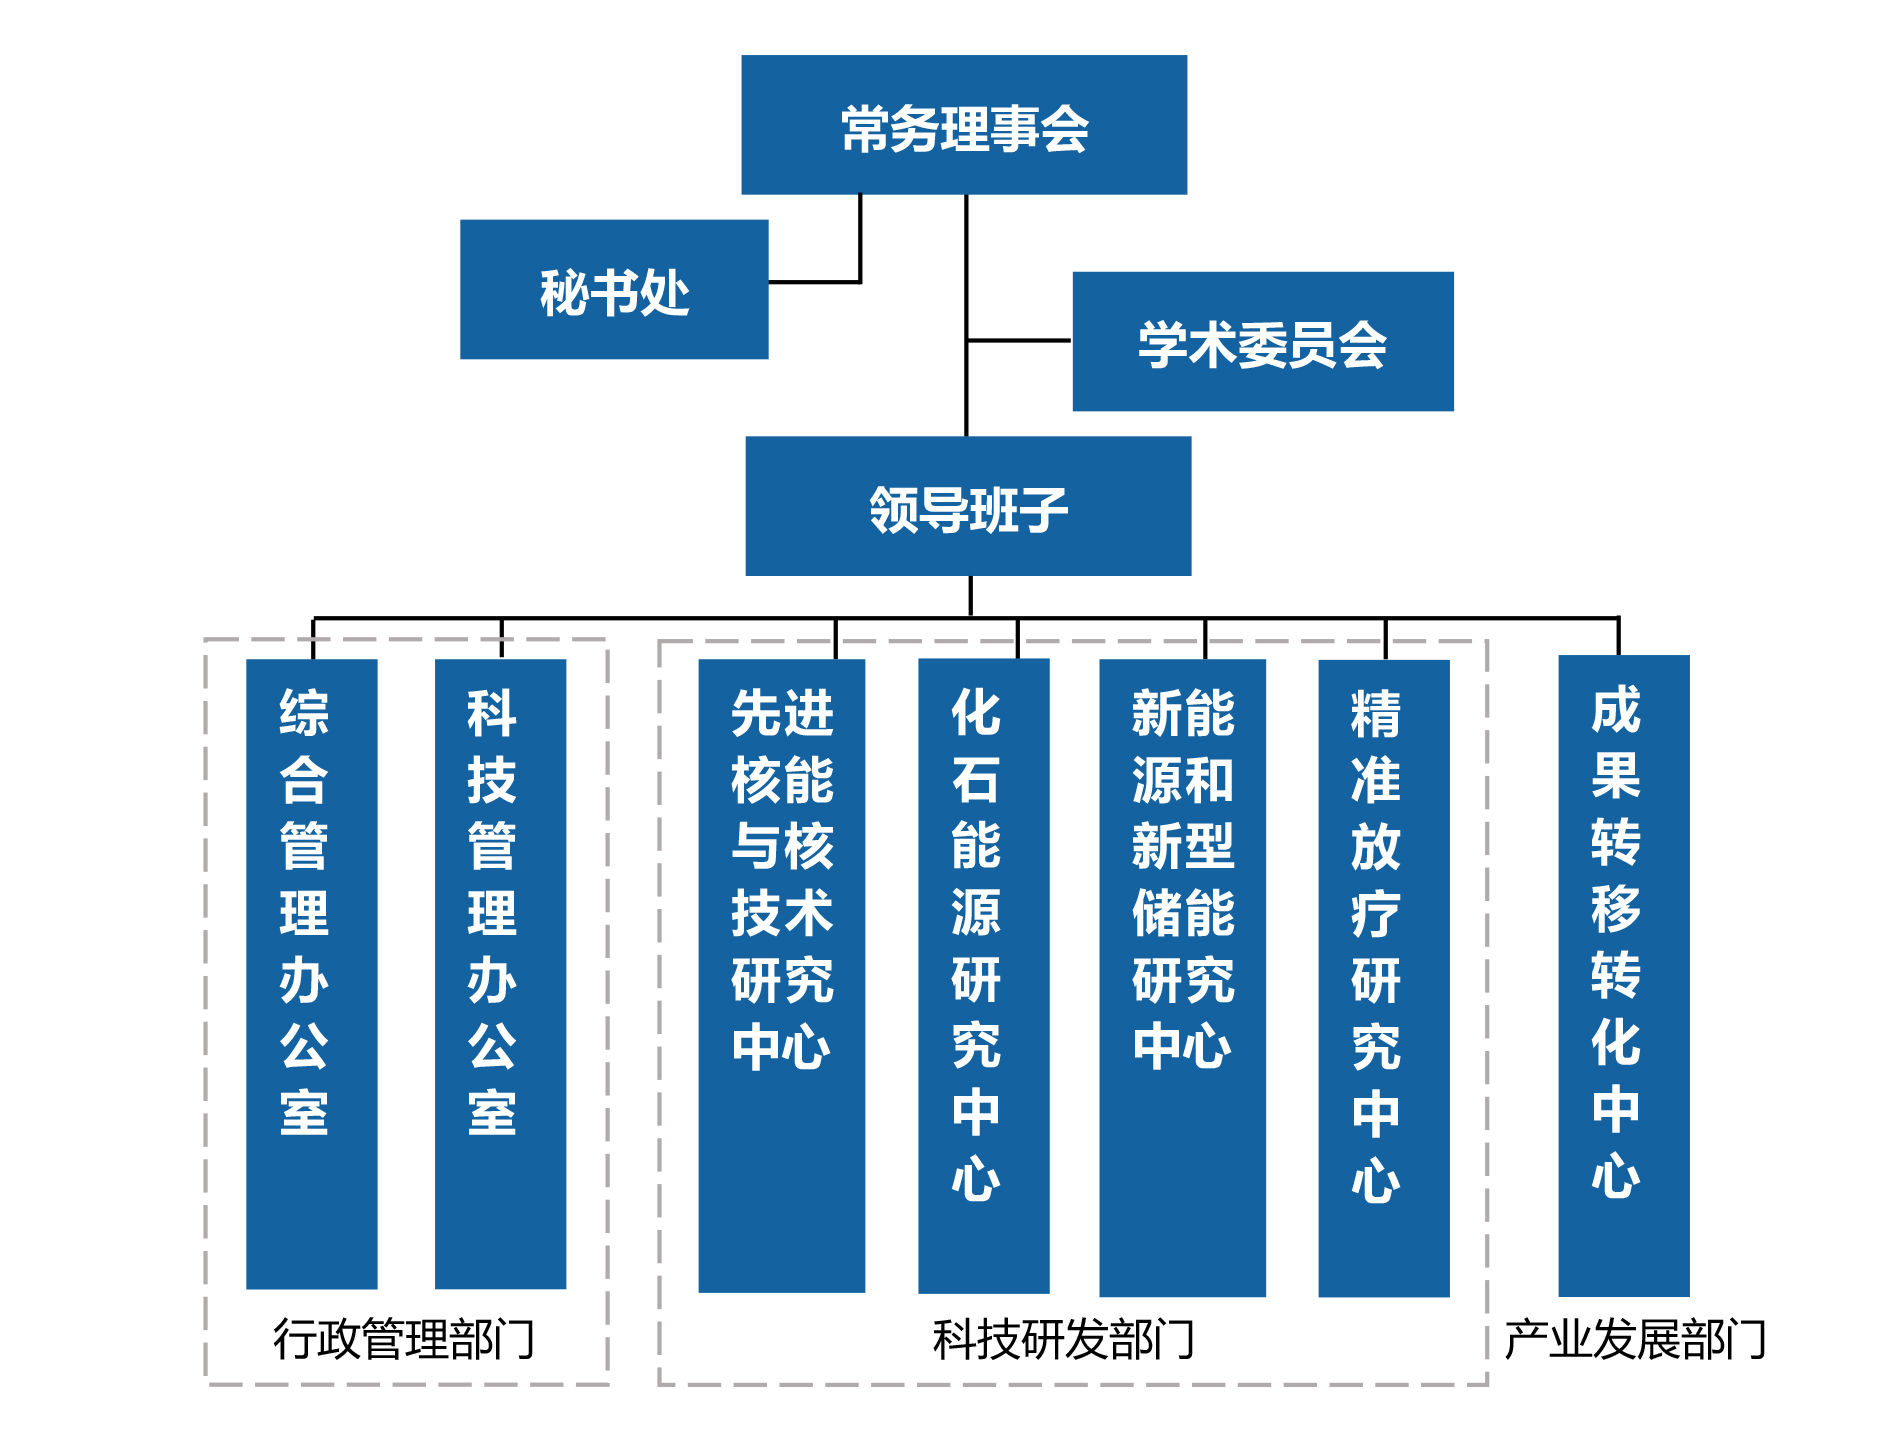 组织架构图(1).jpg